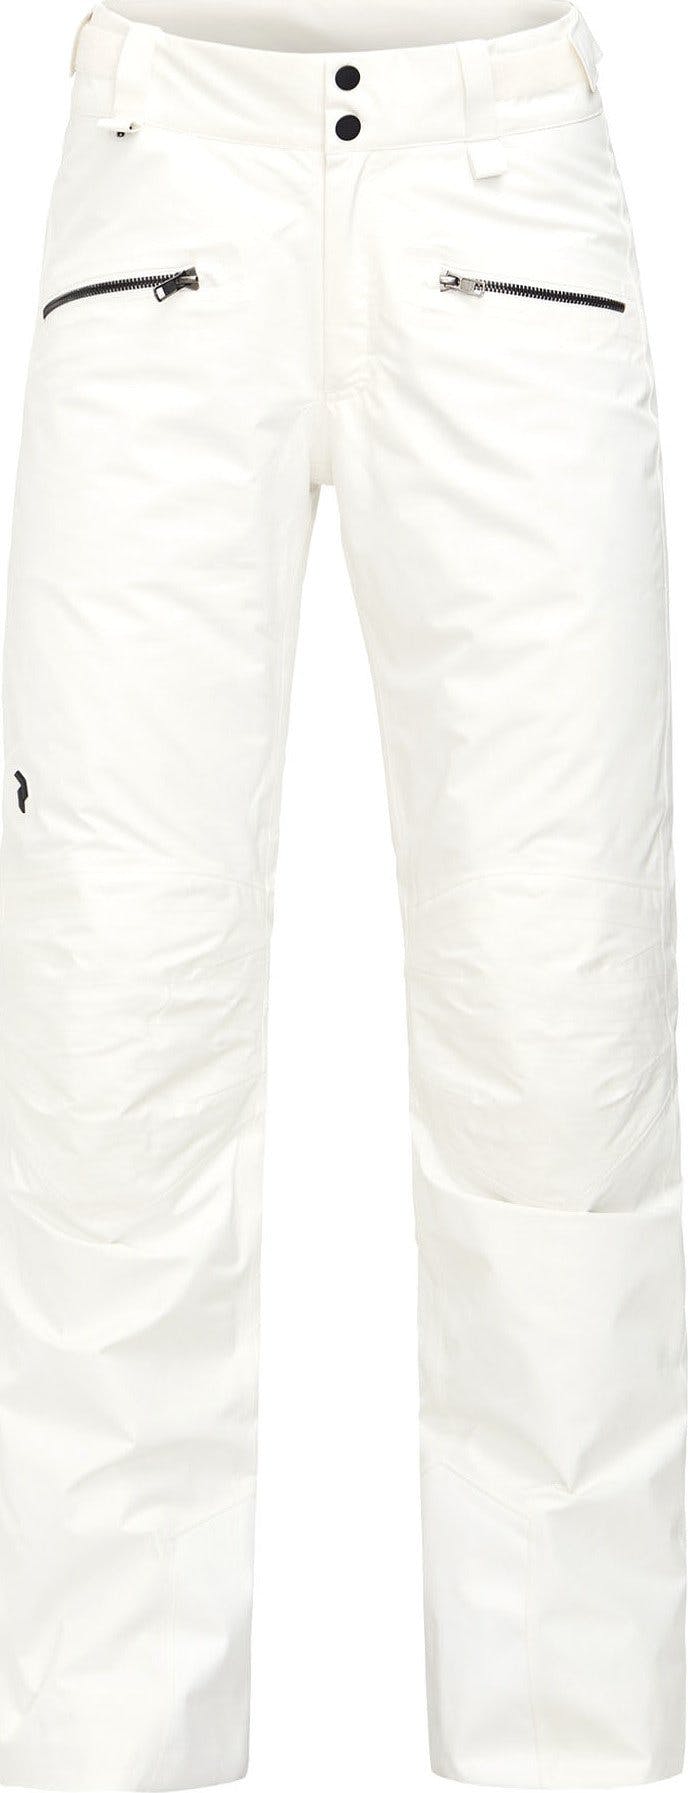 Numéro de l'image de la galerie de produits 1 pour le produit Pantalon de ski Peakville GTX - Femme